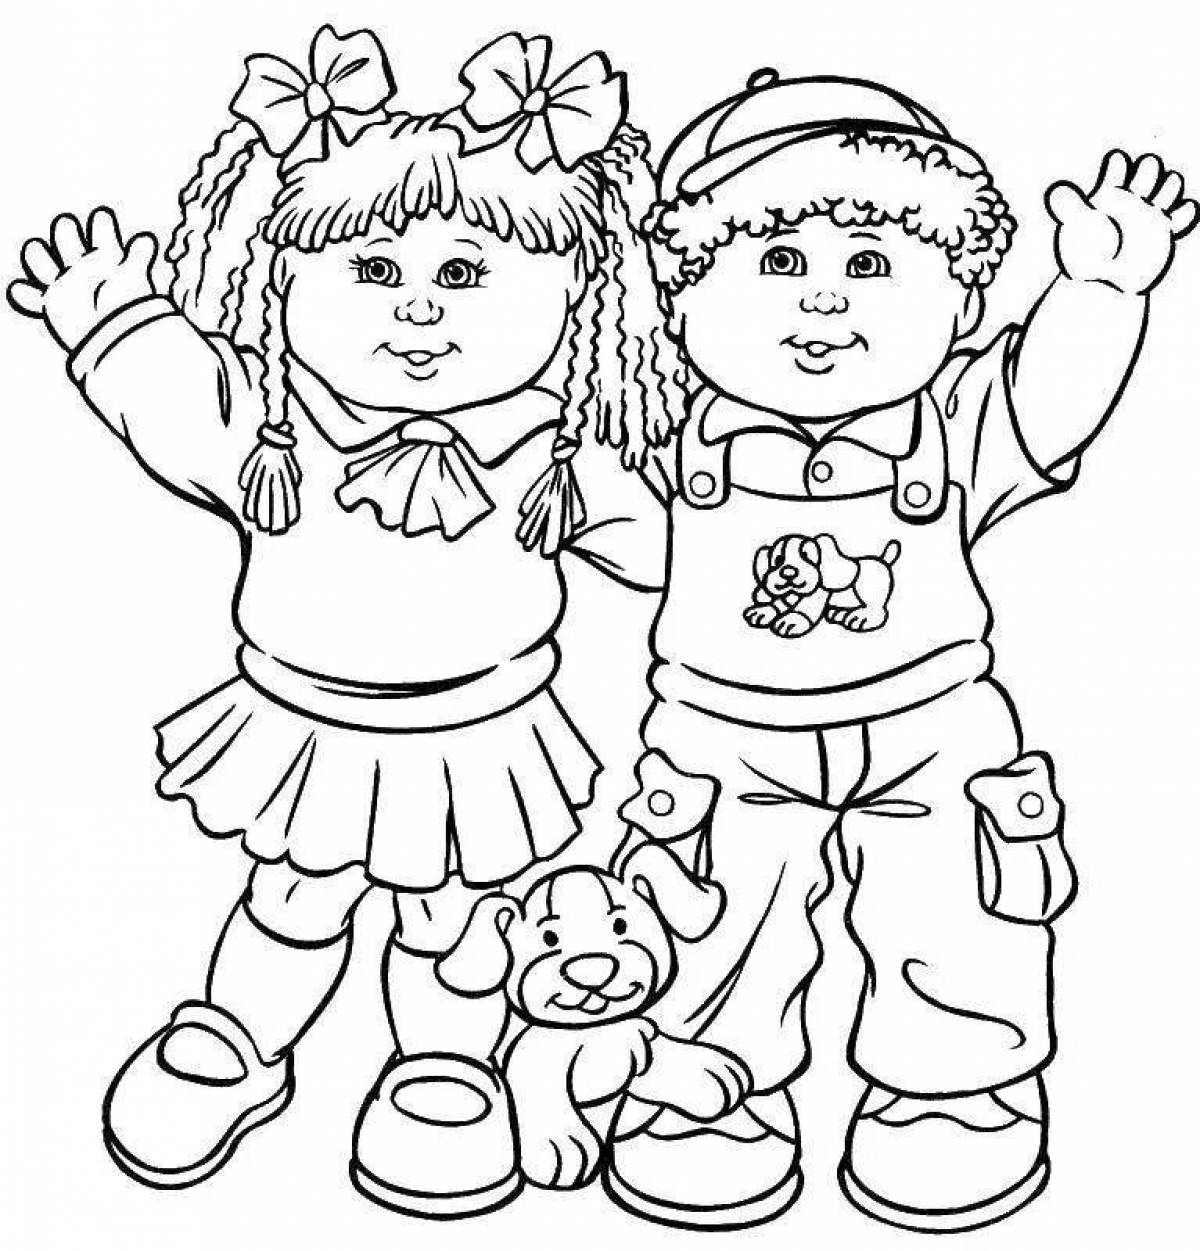 Раскраска для девочек раскраски. раскраски на тему дружба для детей